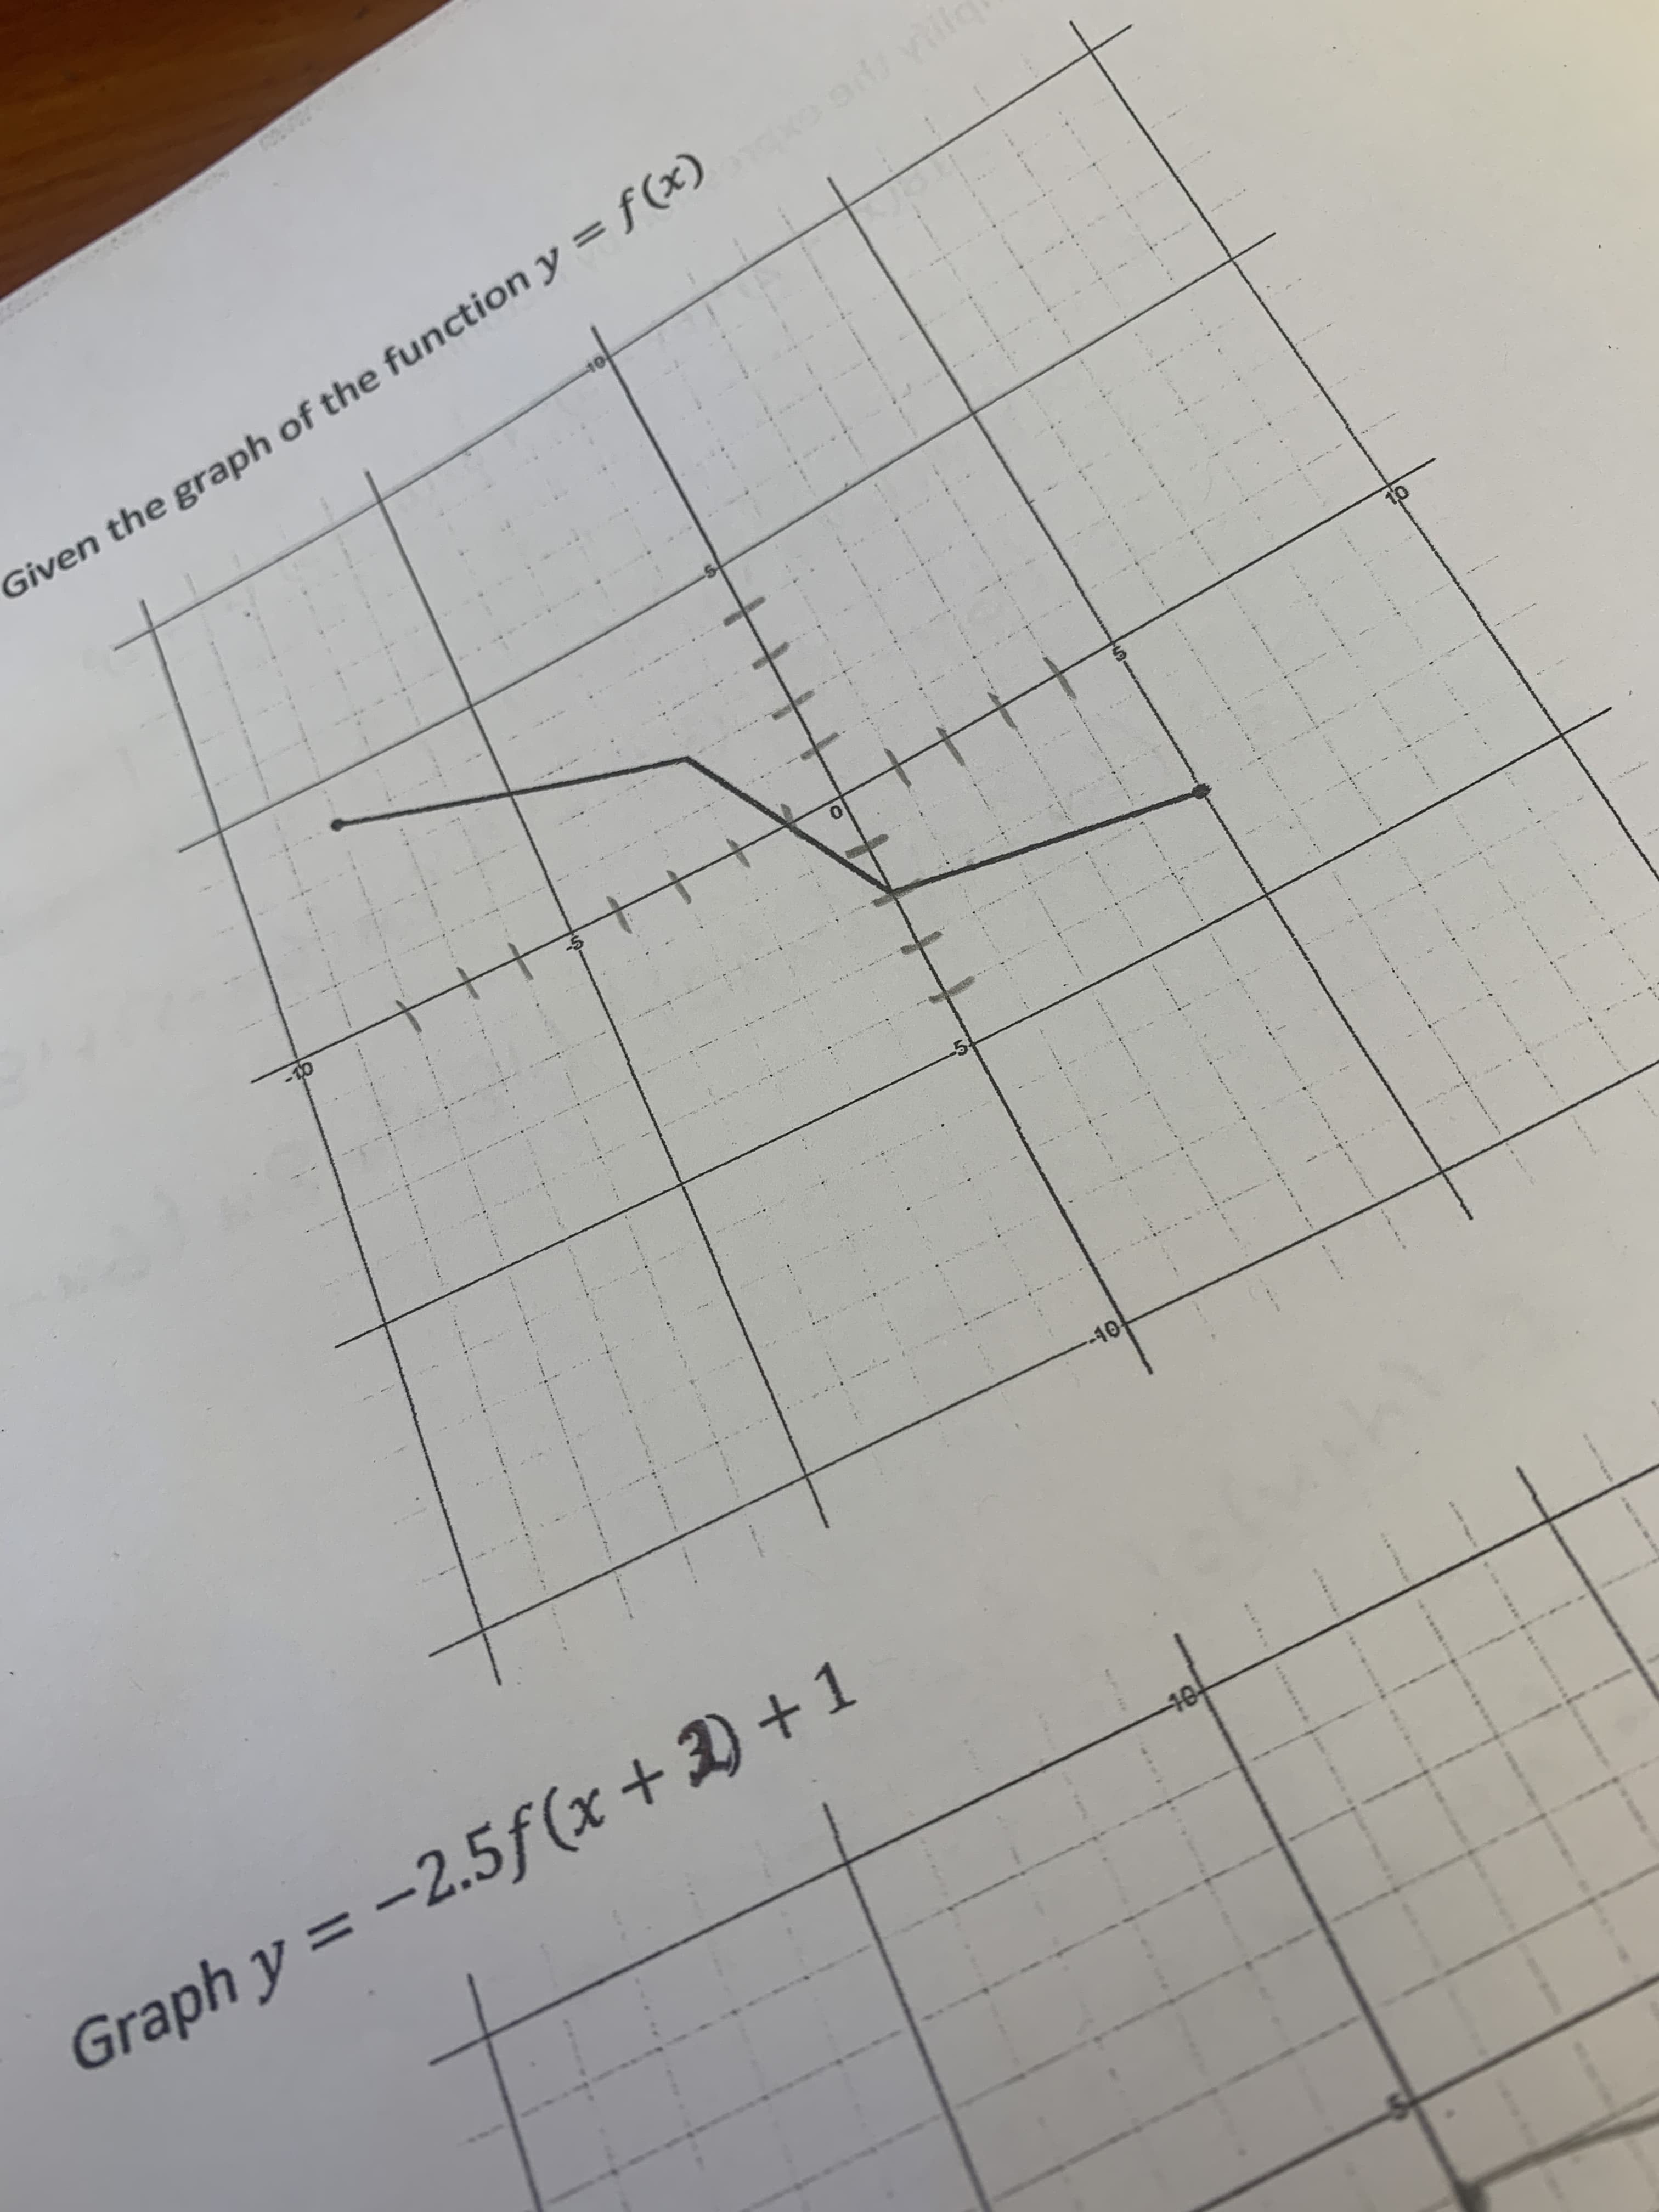 Graph y = -2.5f (x + D +1
